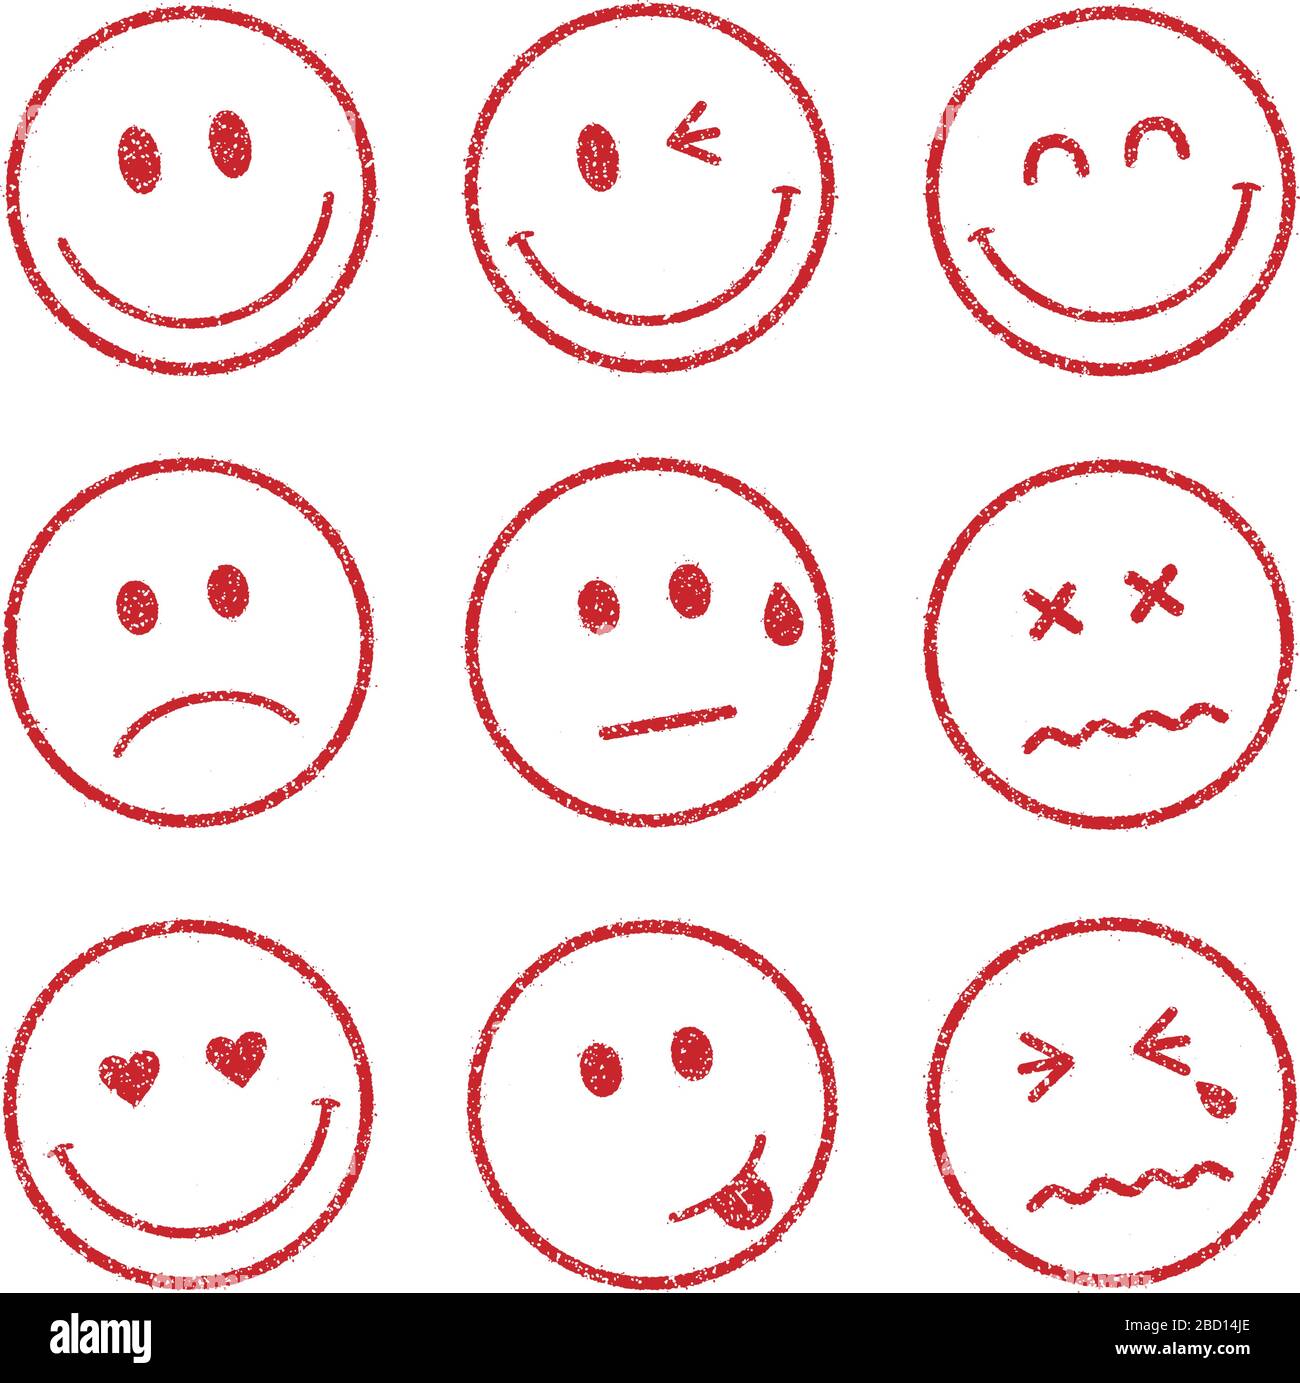 Emoticones Smiley Ensemble D Icones Pour Le Visage Sourire Gai Triste Coeur Clin D œil Pleurer Etc Image Vectorielle Stock Alamy